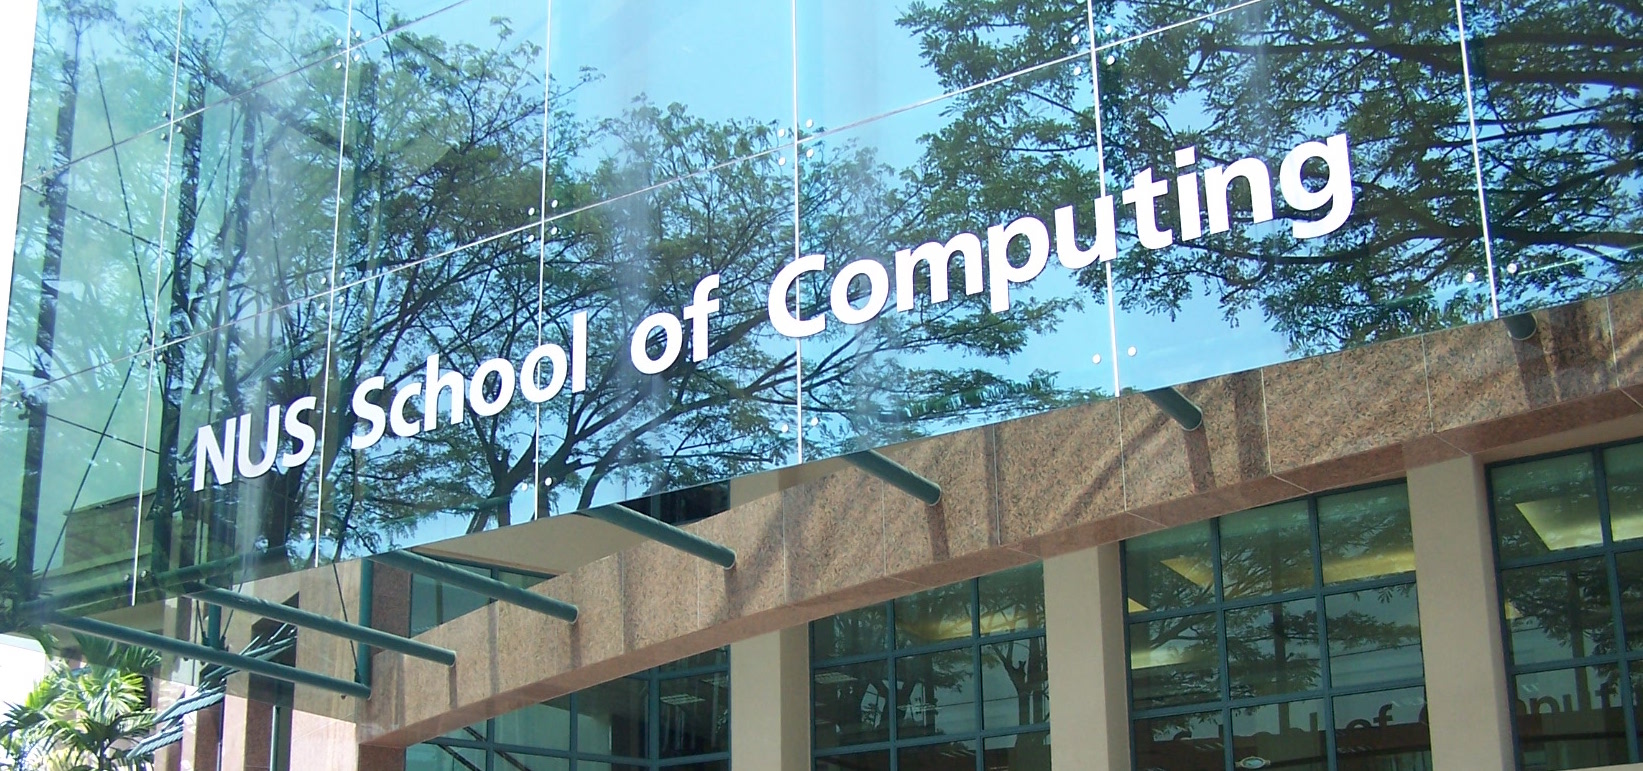 nus singapore phd computer science